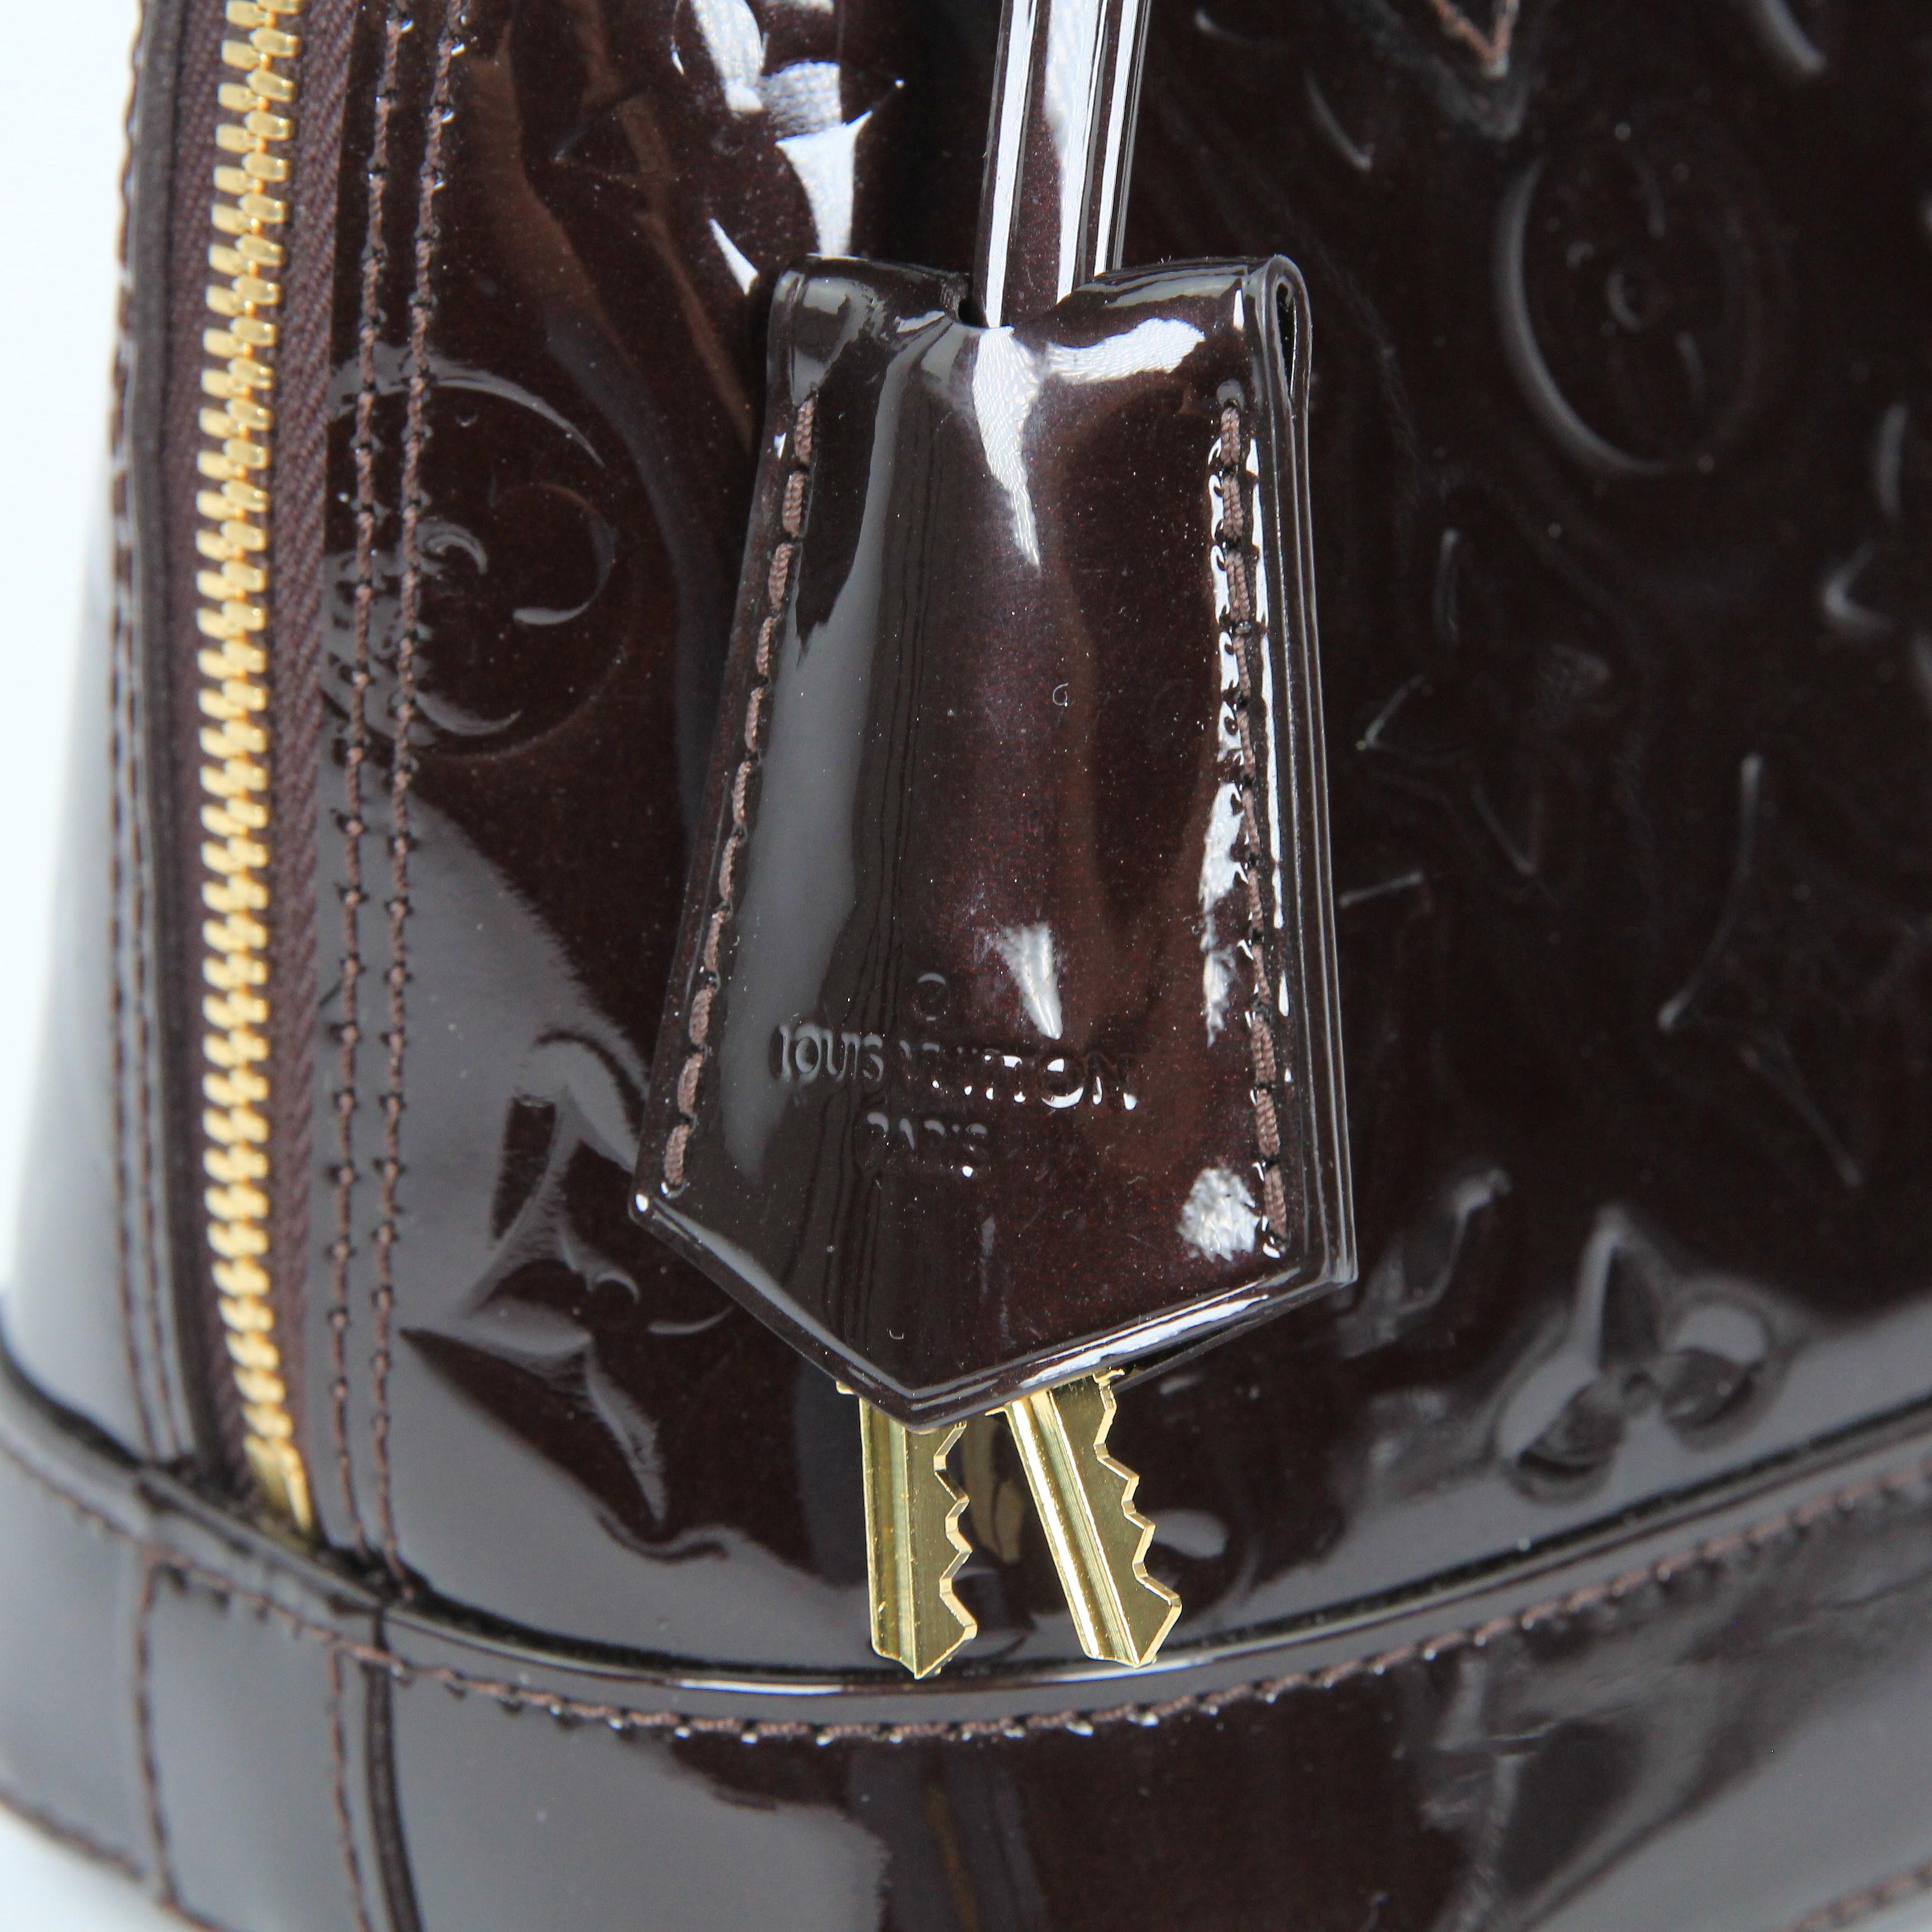 Louis Vuitton Alma BB patent leather handbag For Sale 4